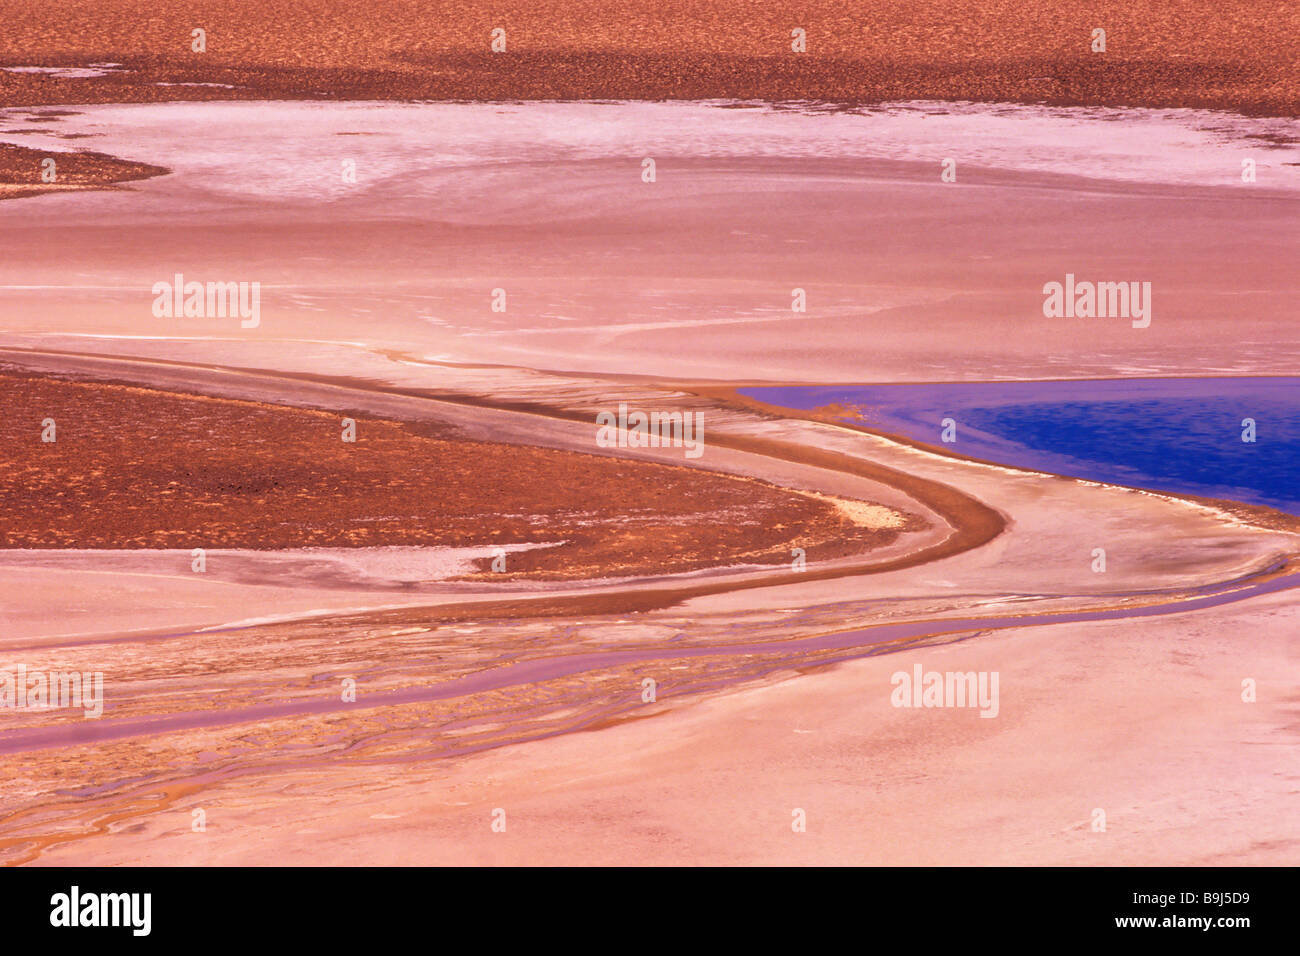 Salar de Quisquiro, Atacama Desert, Chile, Suedamerika Stock Photo